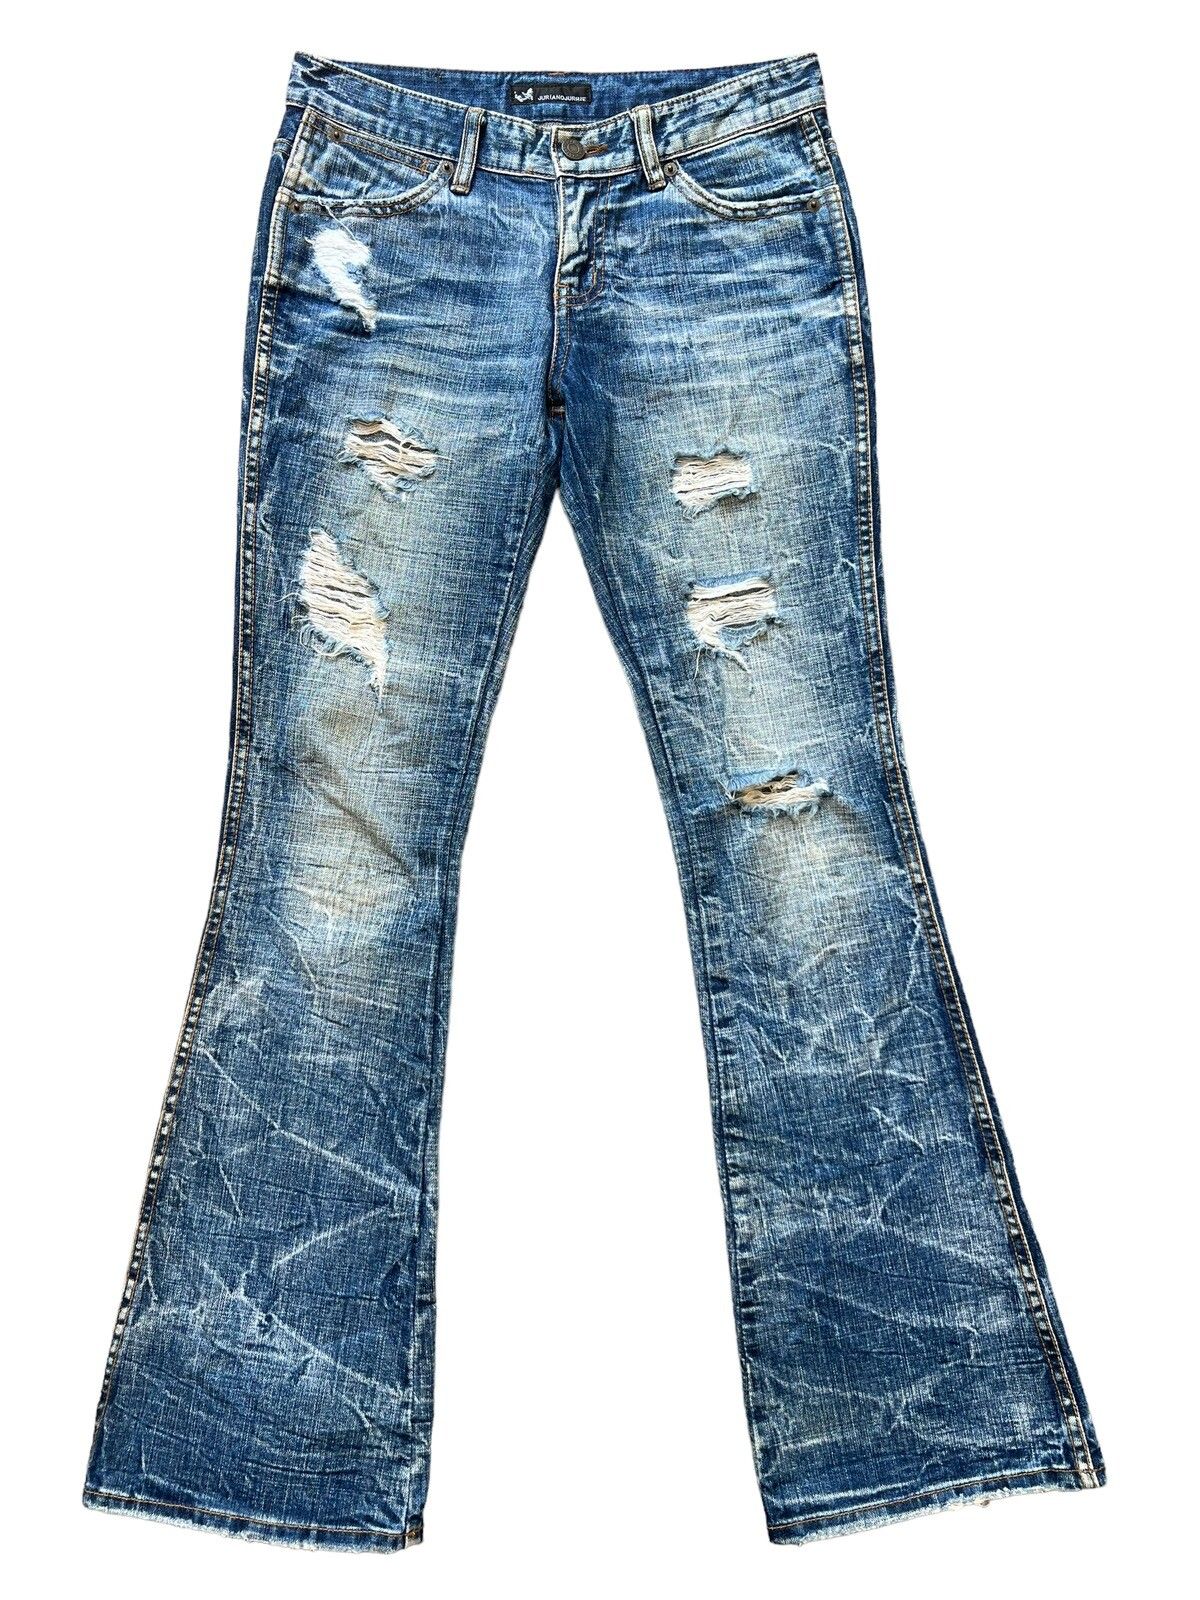 Distressed Denim - Juriano Jurrie Distressed Boot Cut Flare Denim Jeans 29x31 - 2